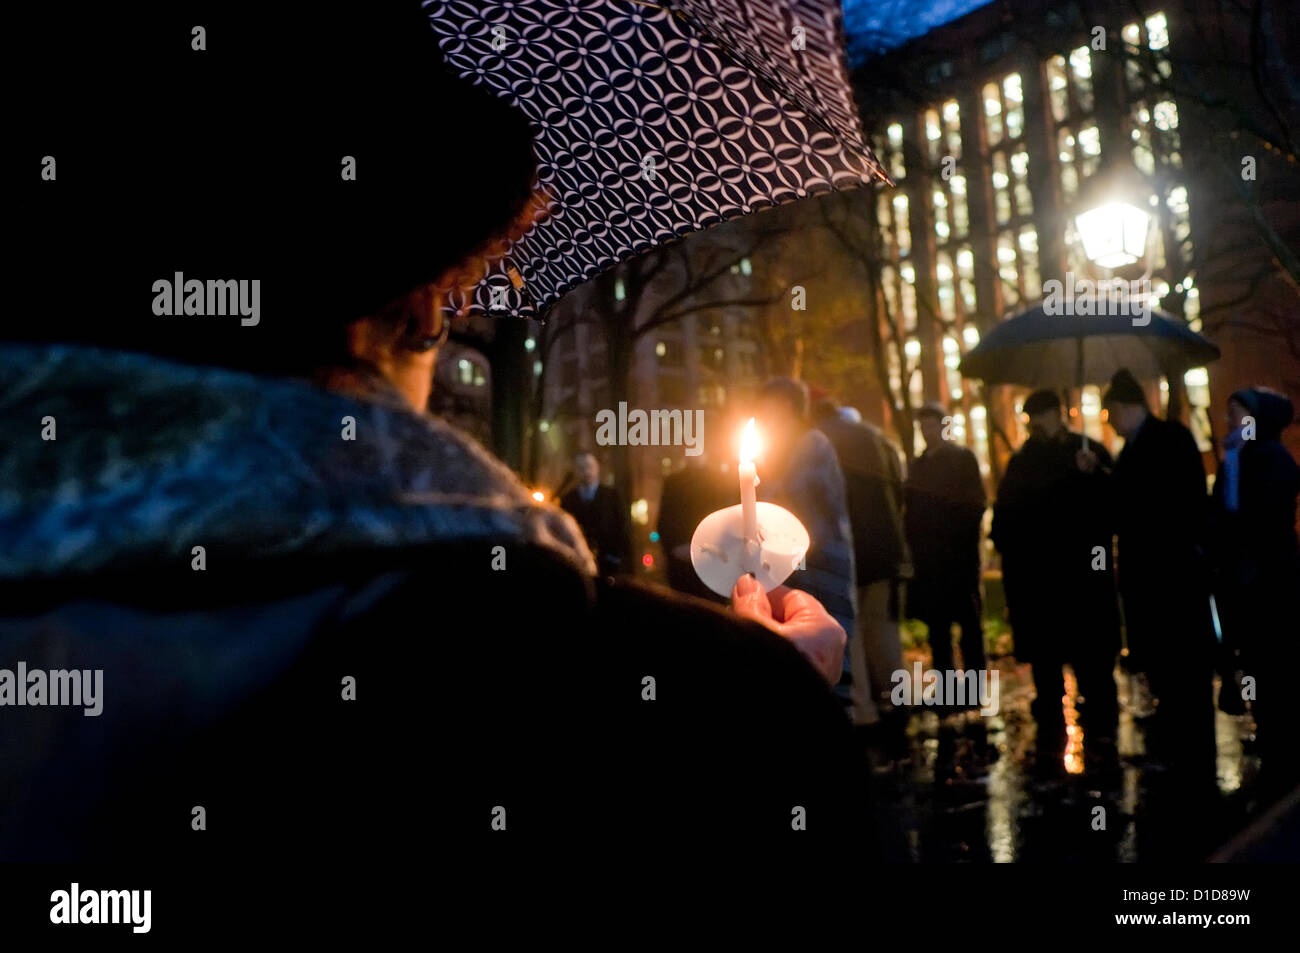 New York, NY - 16 décembre 2012, les New-Yorkais se sont réunis à Washington Square Park pour une veillée aux chandelles pour commémorer les victimes de la fusillade de l'école élémentaire de Sandy Hook et à appeler à un renforcement des lois de contrôle des armes à feu. Banque D'Images